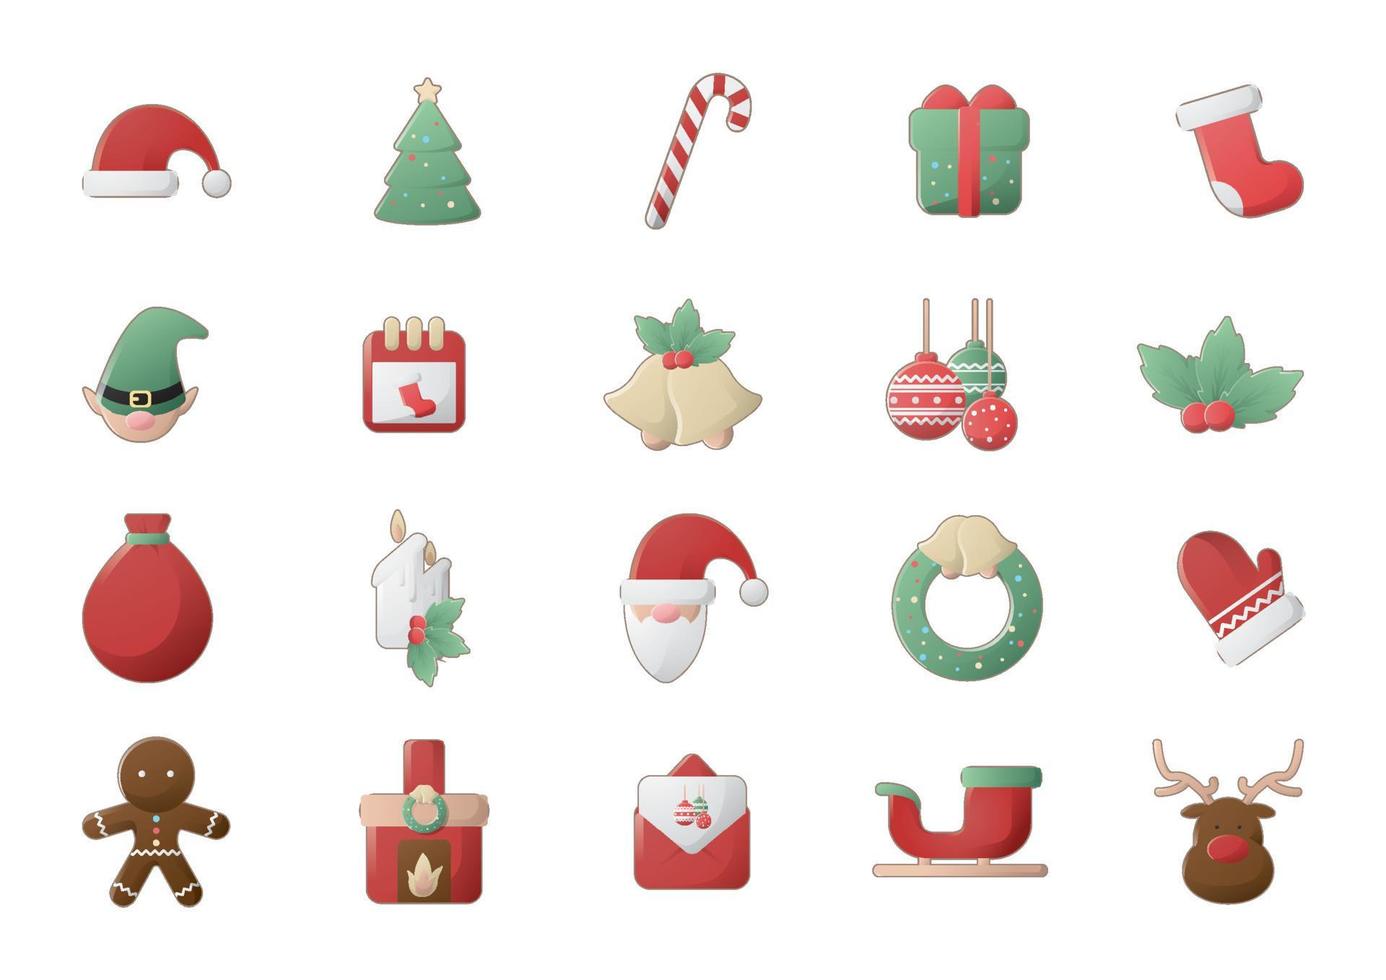 Weihnachten und Neujahr 2022 flaches Farbsymbol mit Schneeflocken, Weihnachtsbaum, Kugeln, Weihnachtsmann, Socke, Geschenk, Getränk und anderem Zeug auf weißem Hintergrund. Vektor-Illustration für Weihnachtsfeiertage. vektor